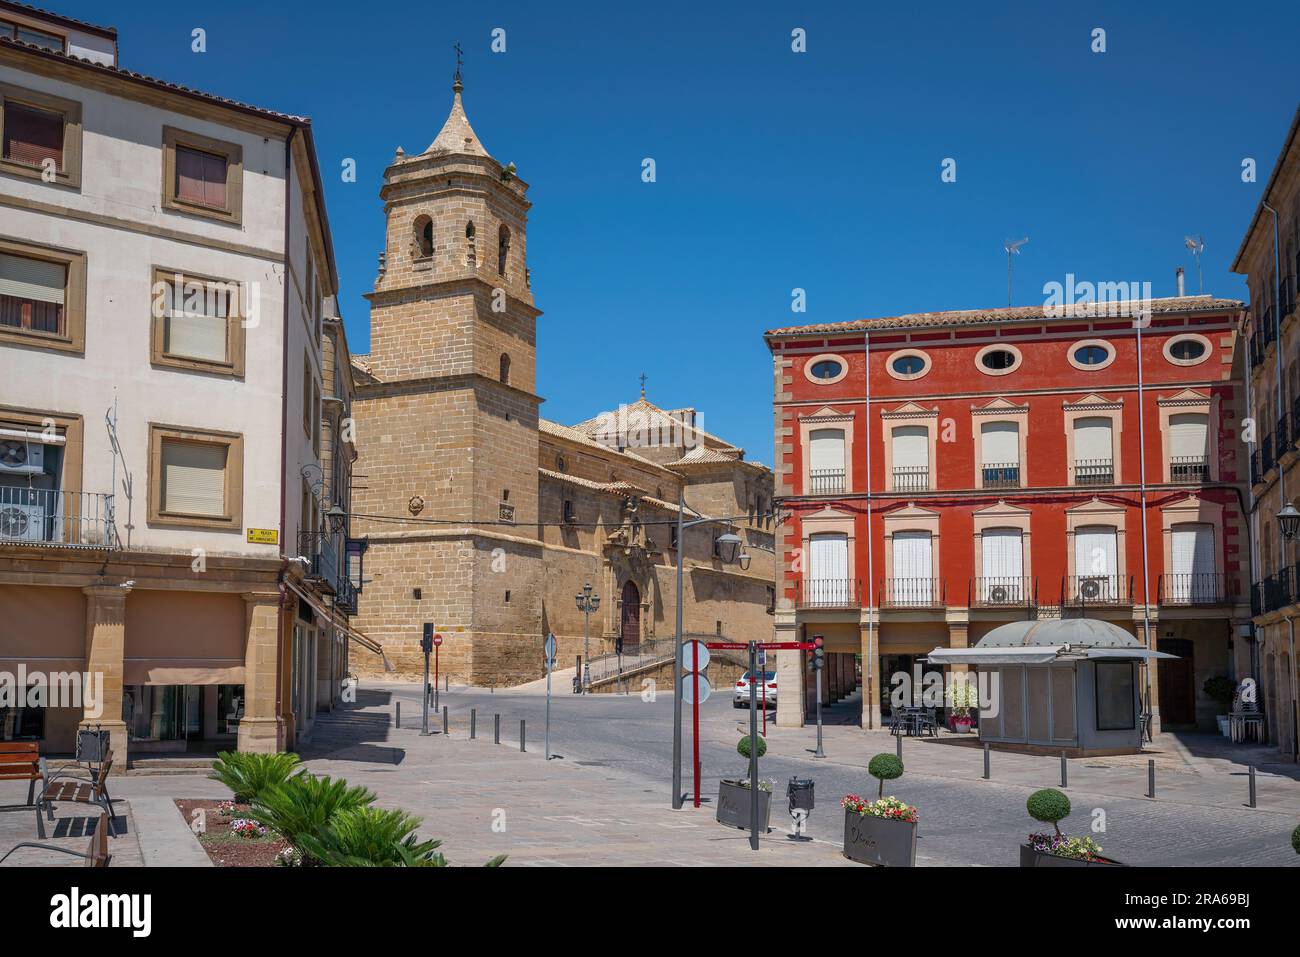 Trinity Church e Plaza Andalucia Square - Ubeda, Jaen, Spagna Foto Stock